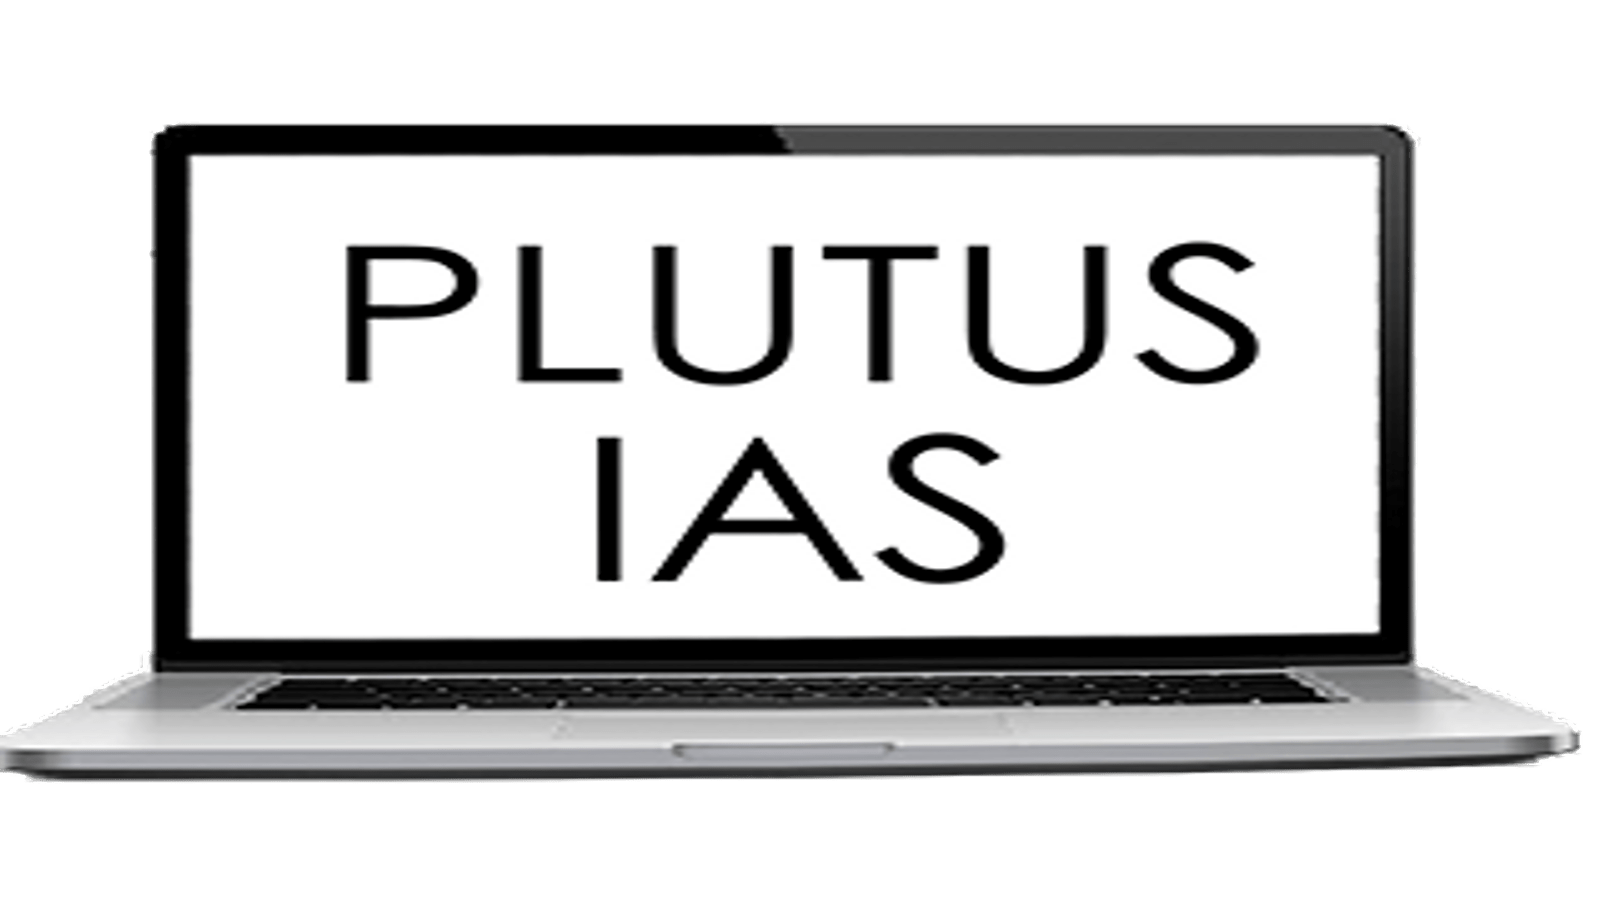 Plutus IAS Online Coaching Ranchi